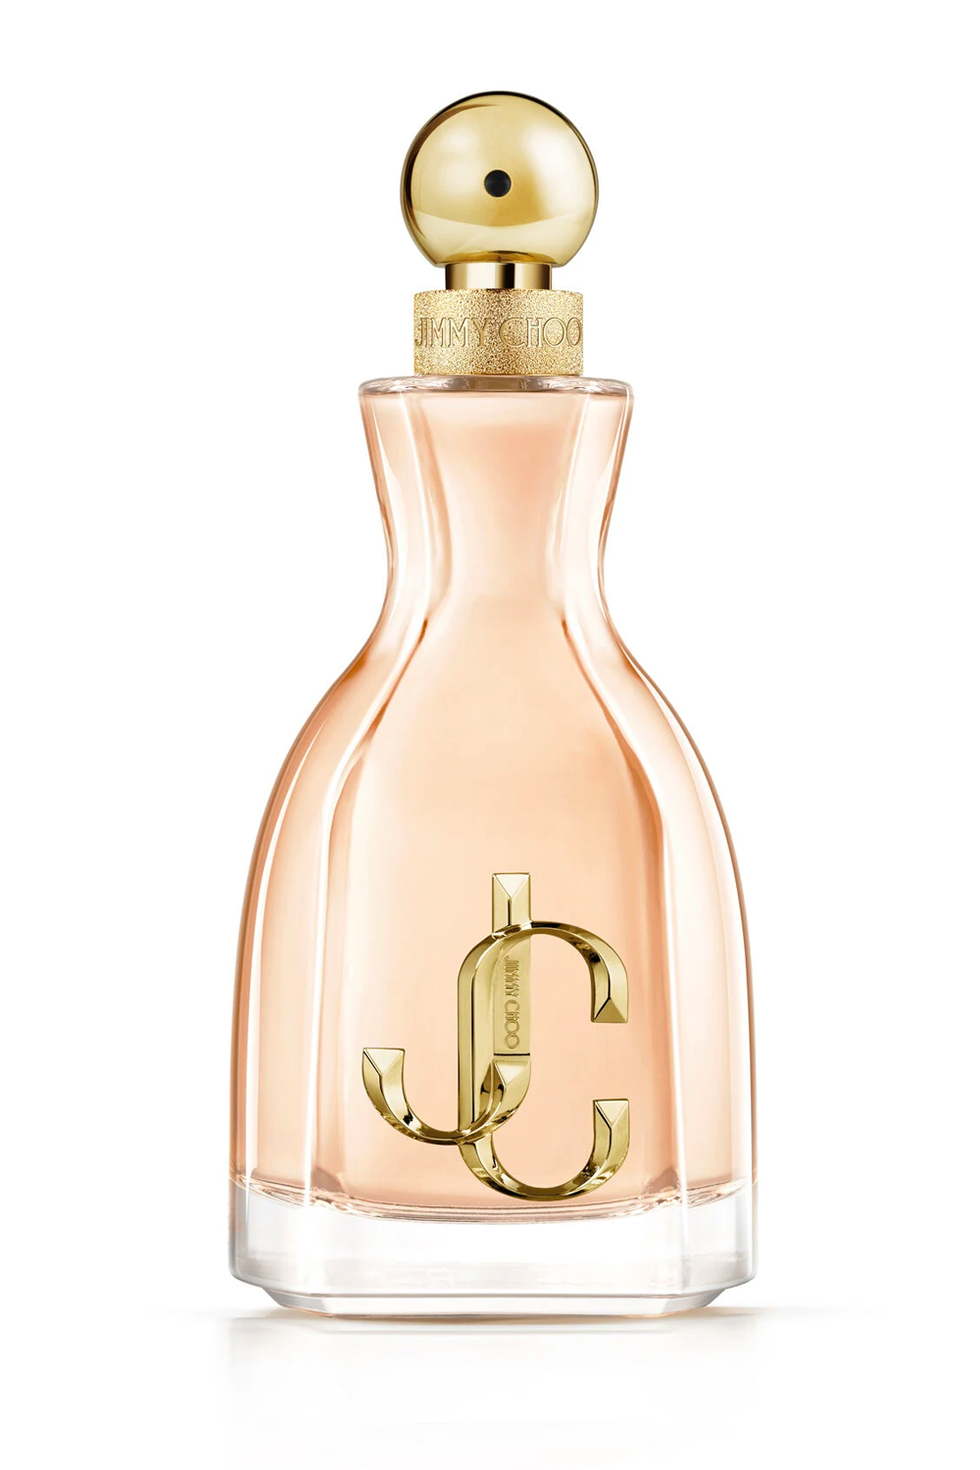 Order top 10 ladies perfumes online!